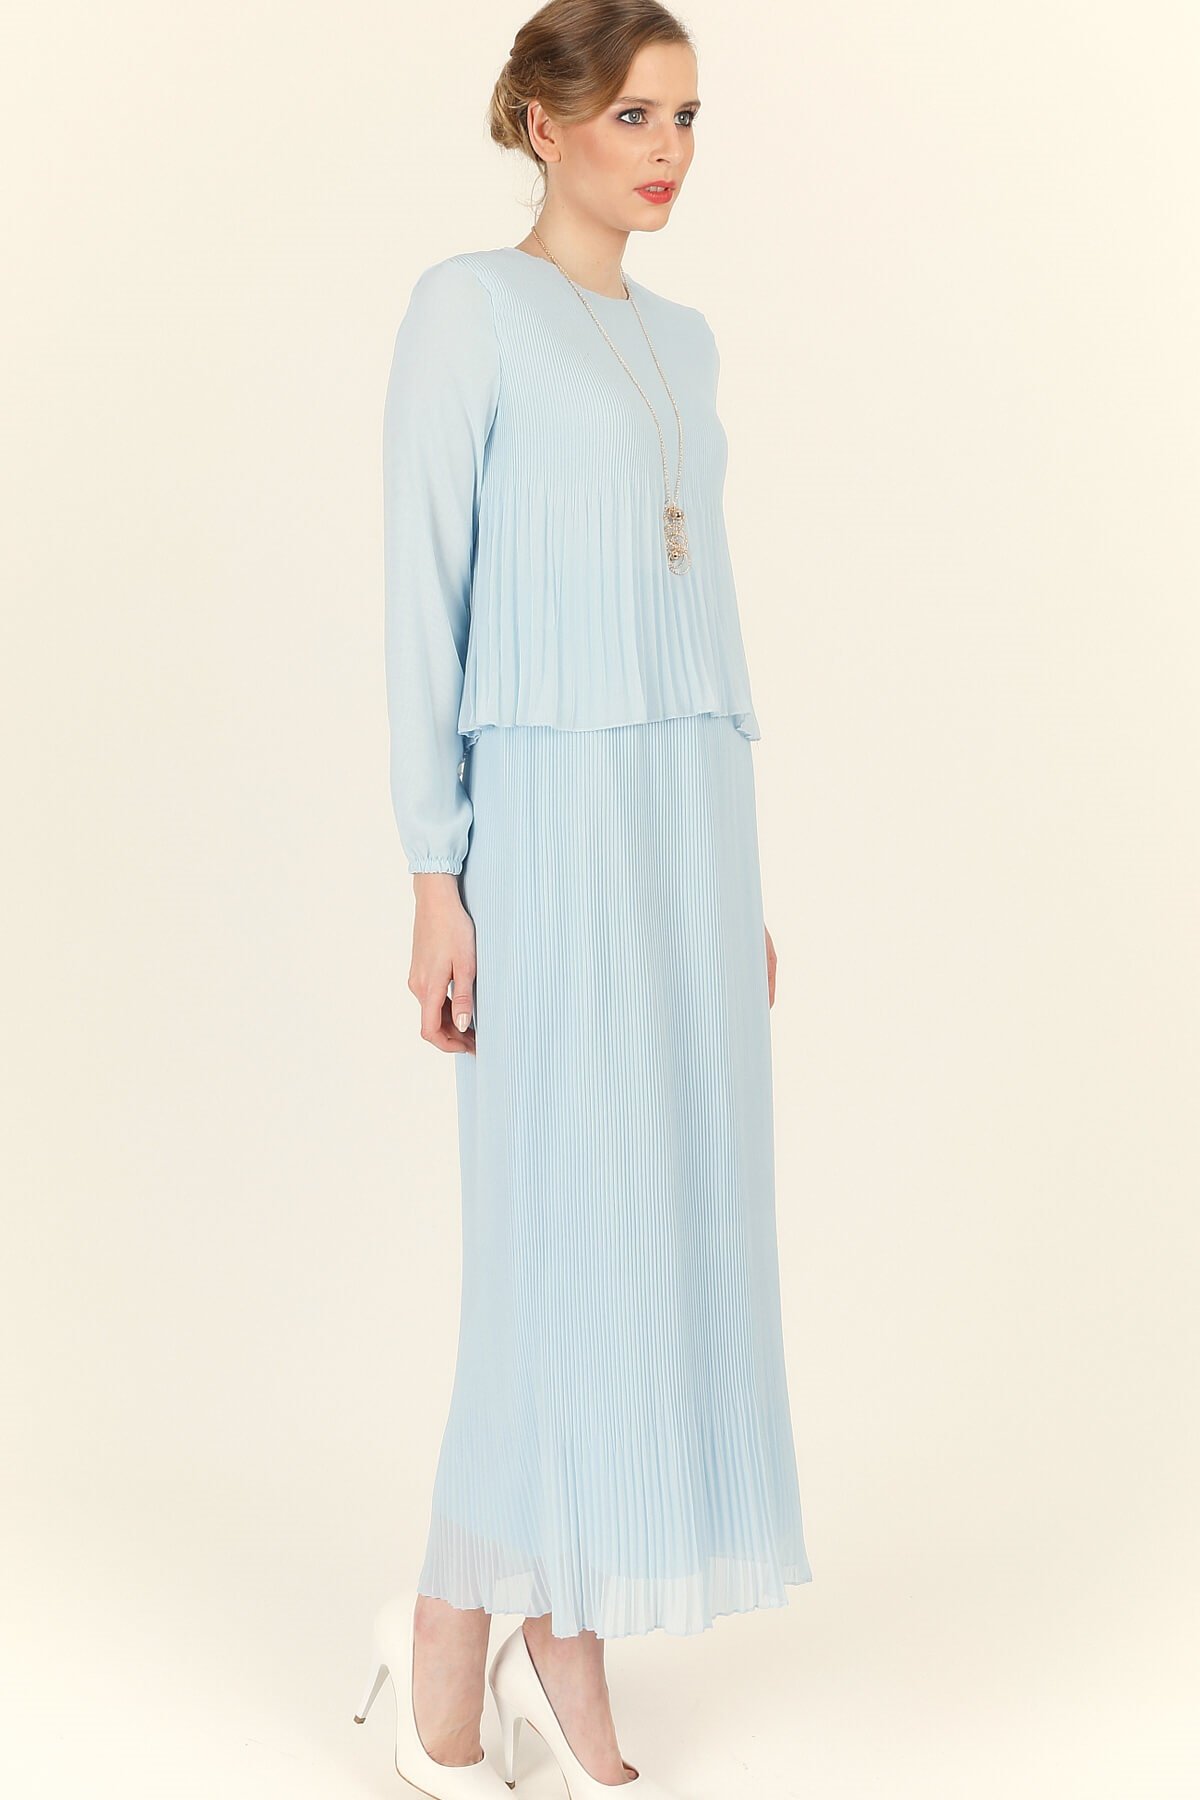 Piliseli Şifon Elbise - Mavi - Tesettür Elbise